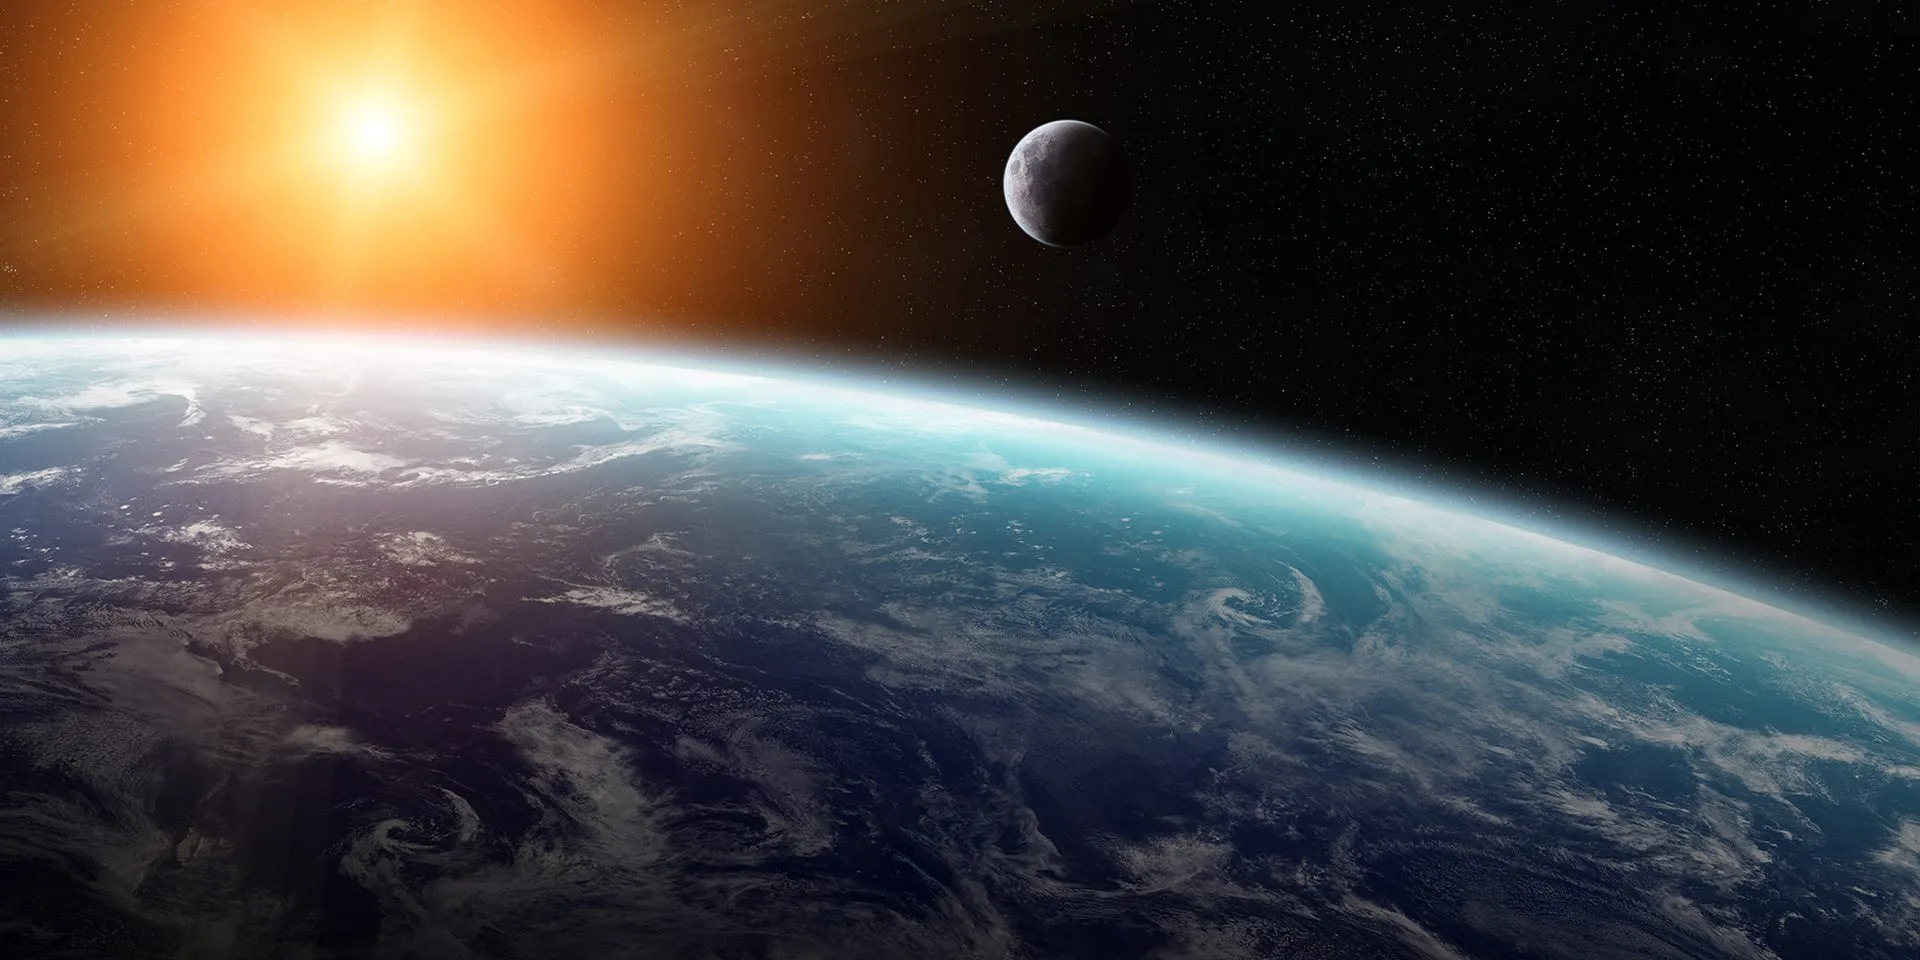 太阳、月亮的引力可能驱动地球的板块运动。